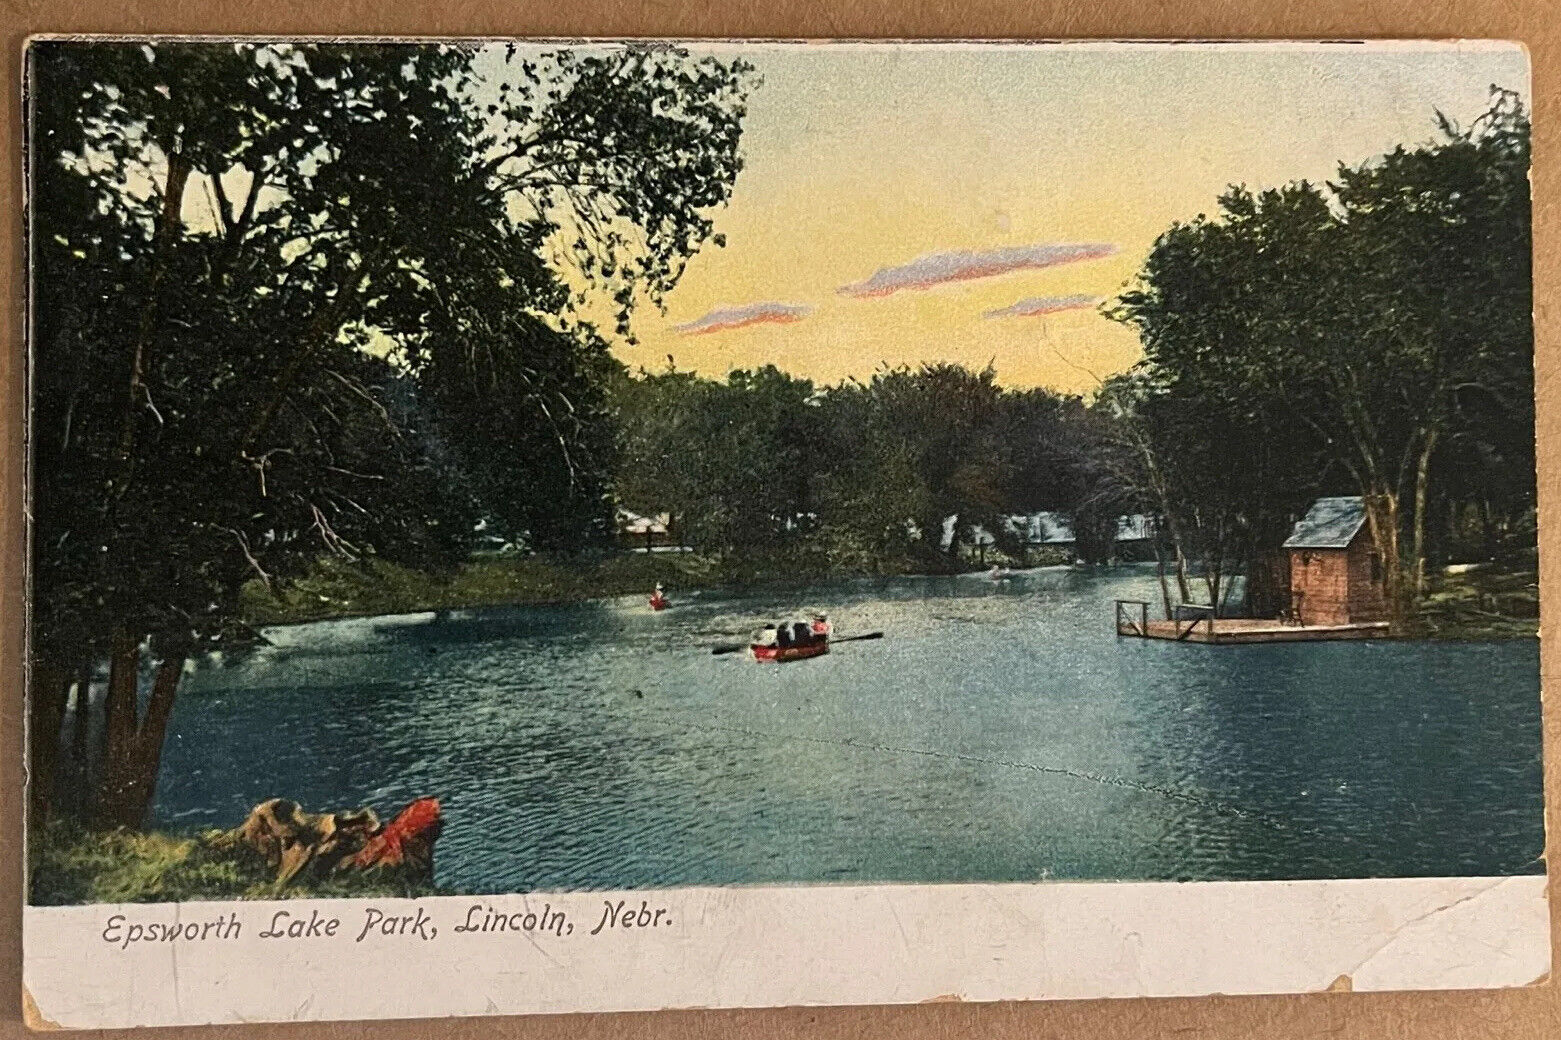 Lincoln Nebraska Epsworth Lake Park Canoe Scene Antique Postcard c1900